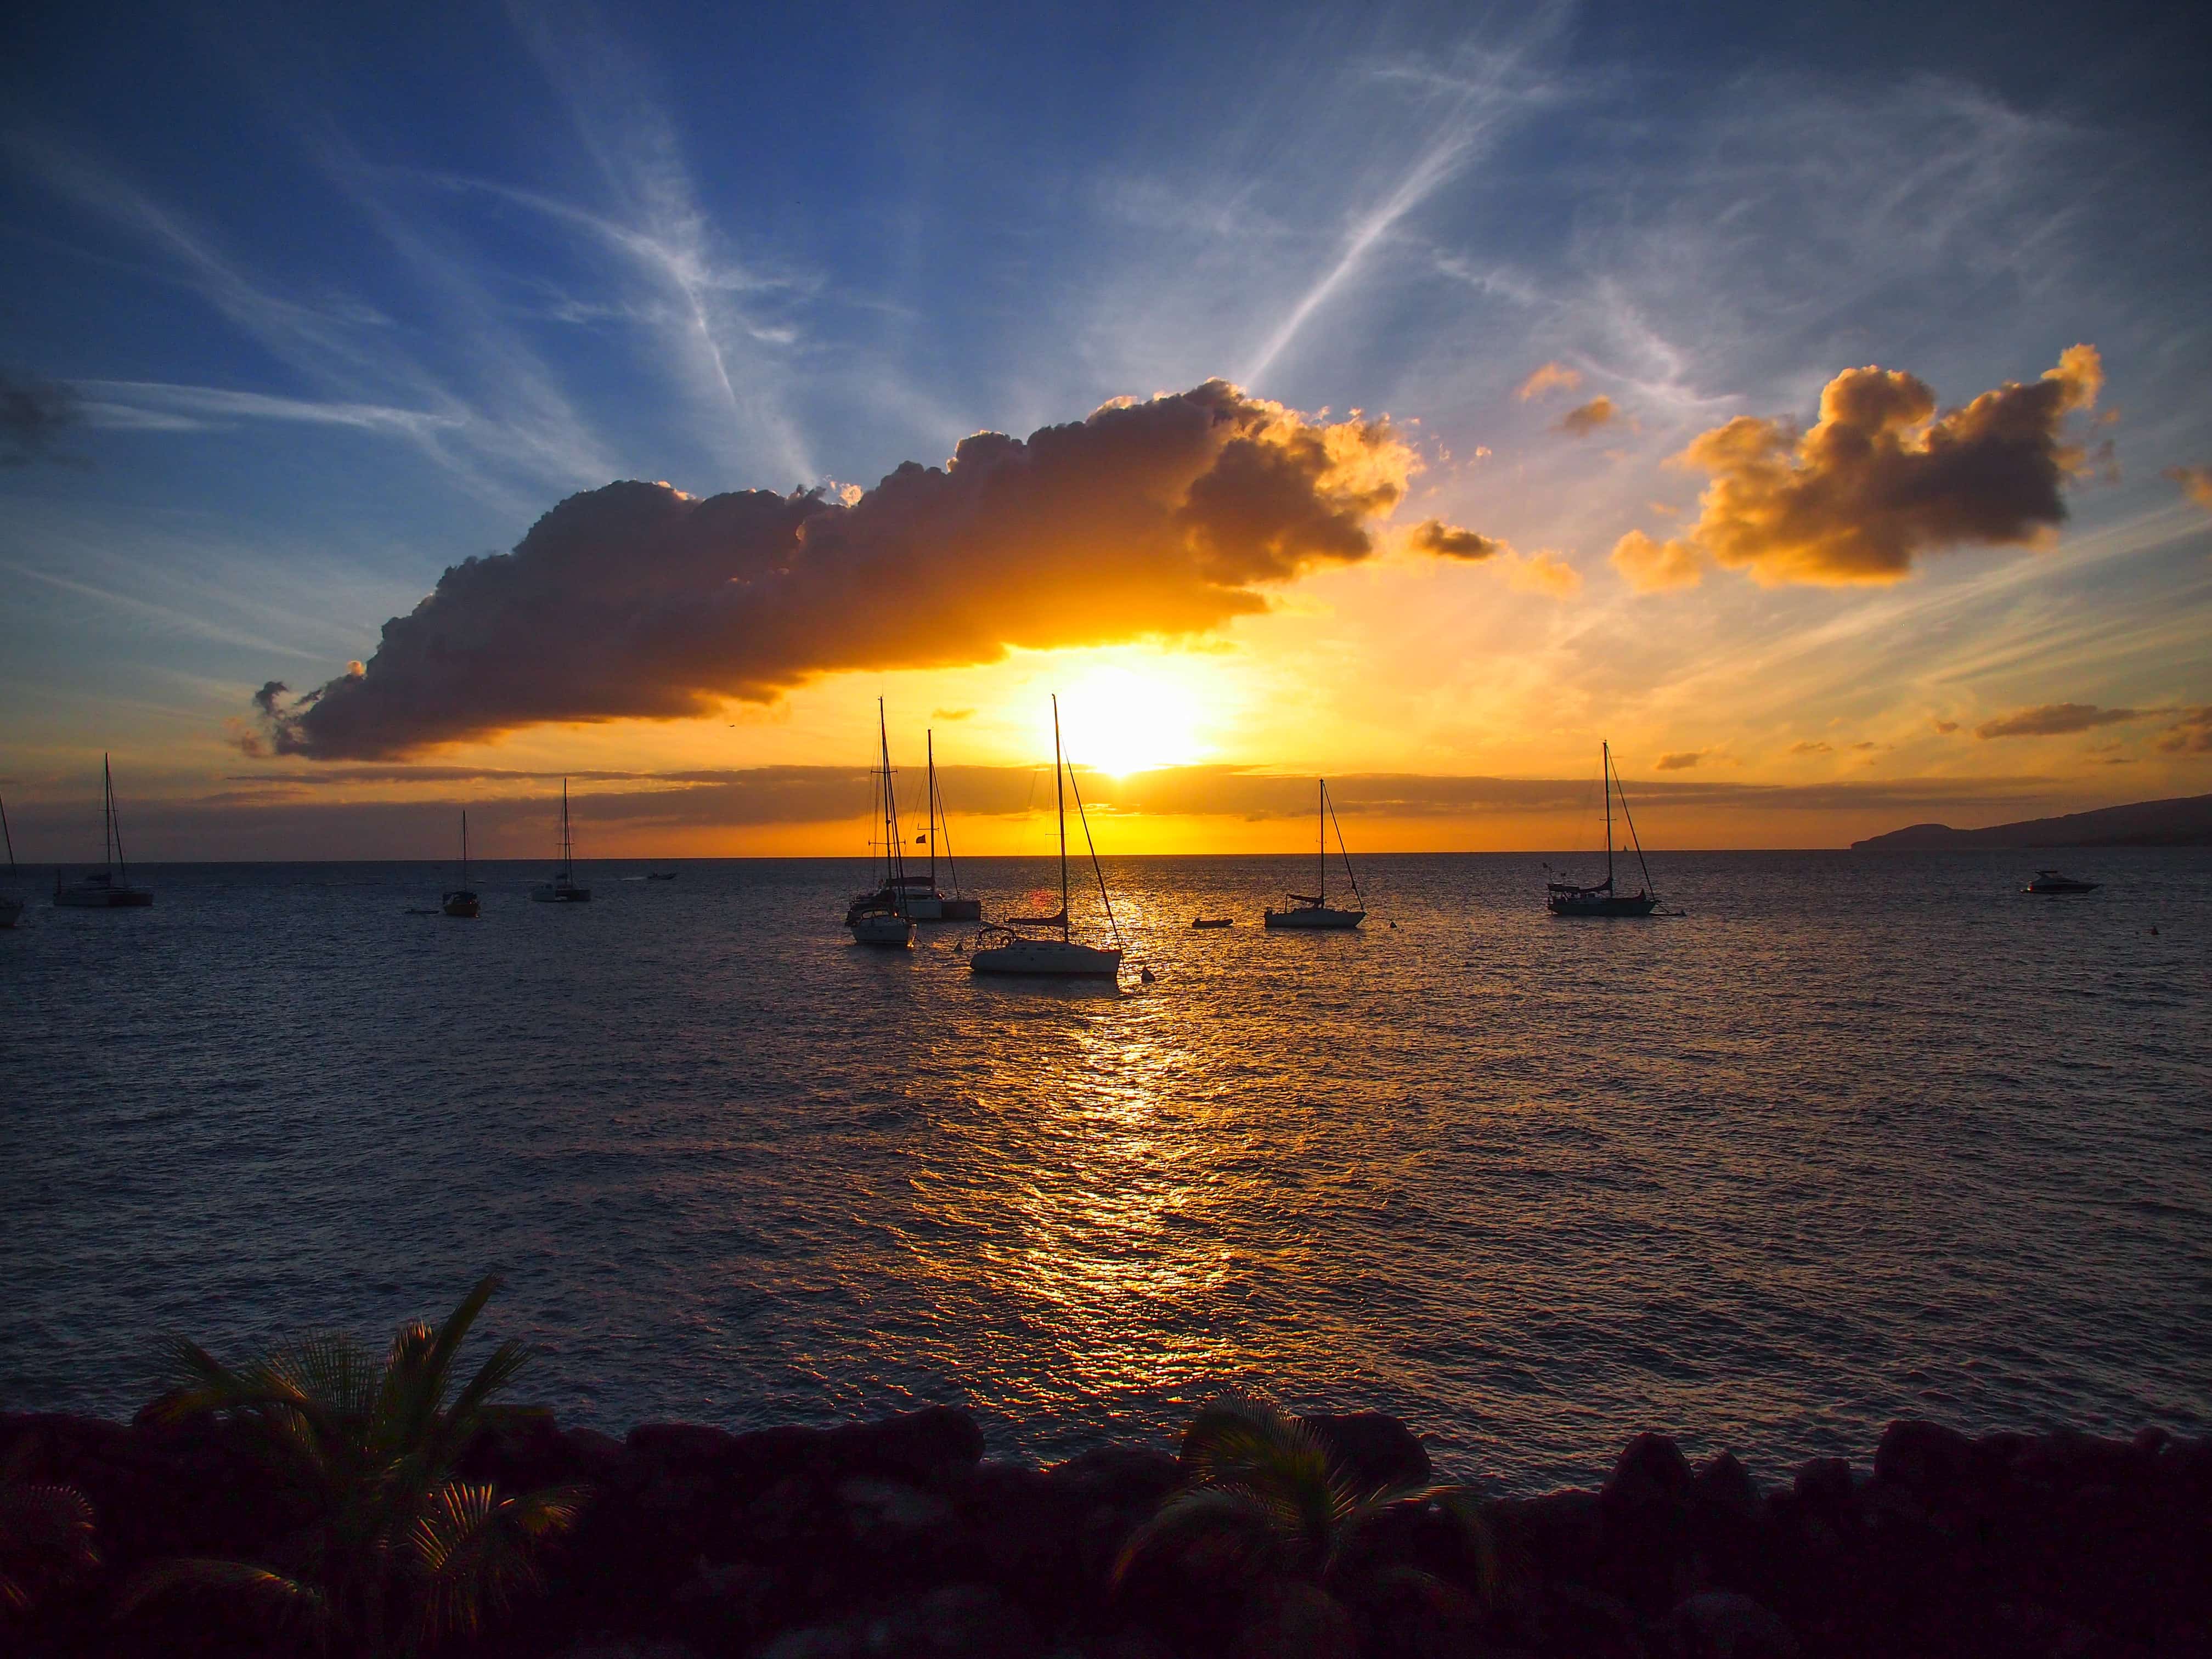 Martinique Sunset by Steve Bennett